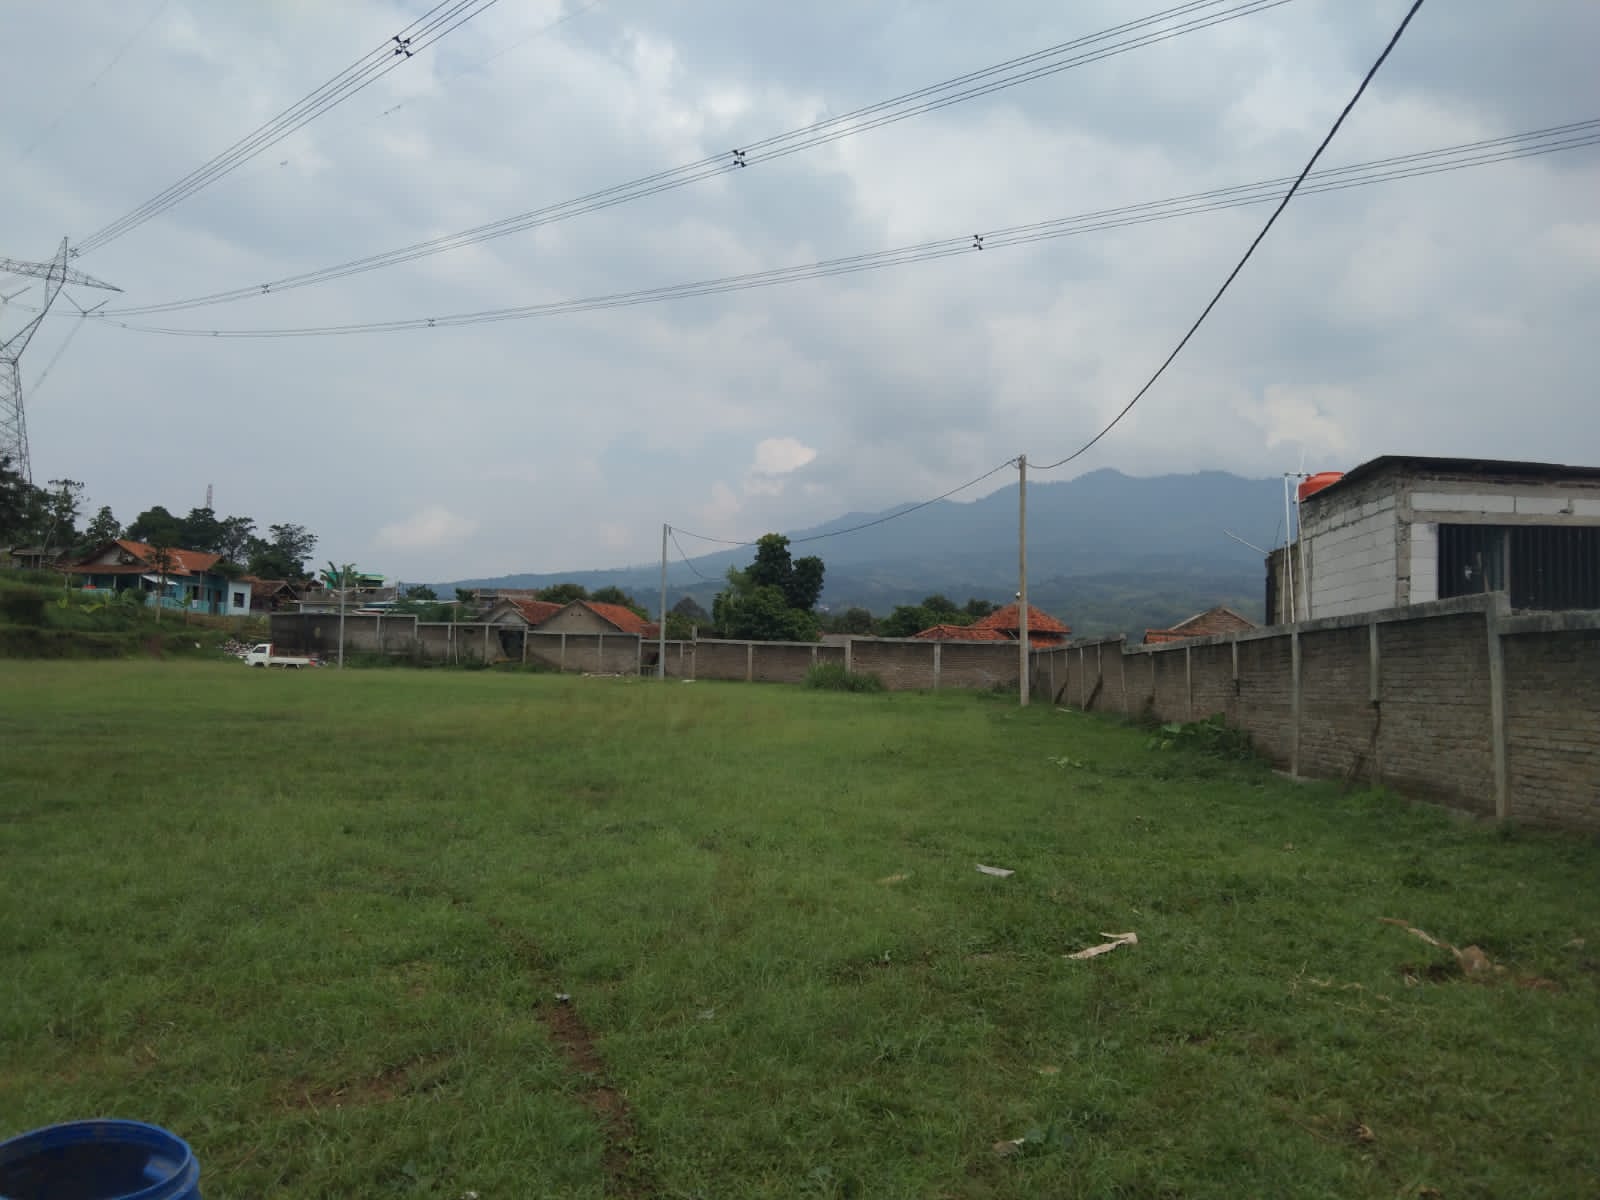 Tiang listrik yang sudah mulai terpsang di lingkungan Perumahan SBG, Kecamatan Cimanggung, Kabupaten Sumedang untuk fasilitas relokasi korban longsor Cimanggung. (Istimewa)